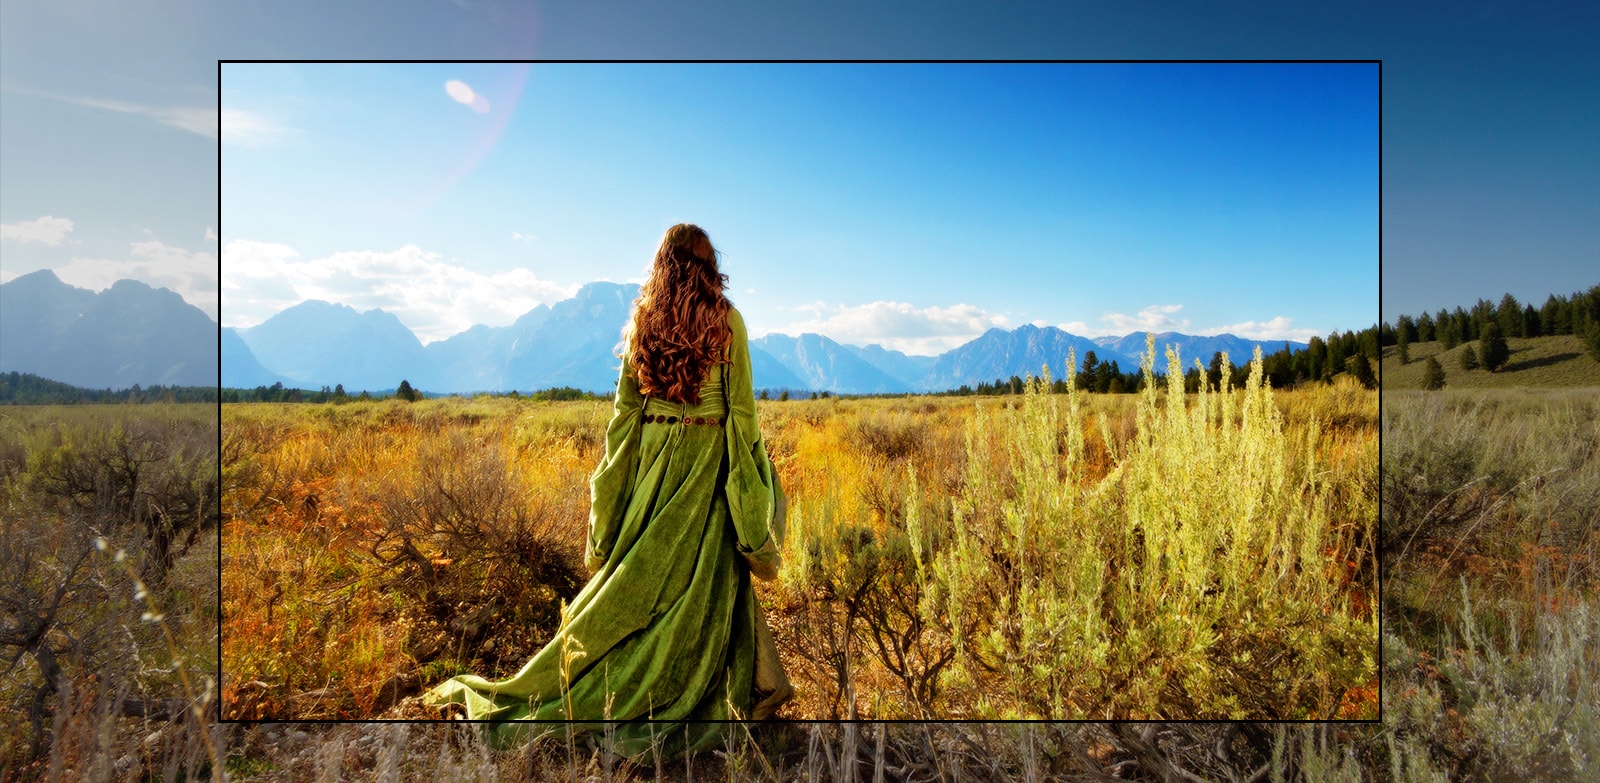 TV-képernyőn megjelenő jelenet egy fantasy filmből, ahol egy nő áll a mezőn, miközben a hegyek felé néz.